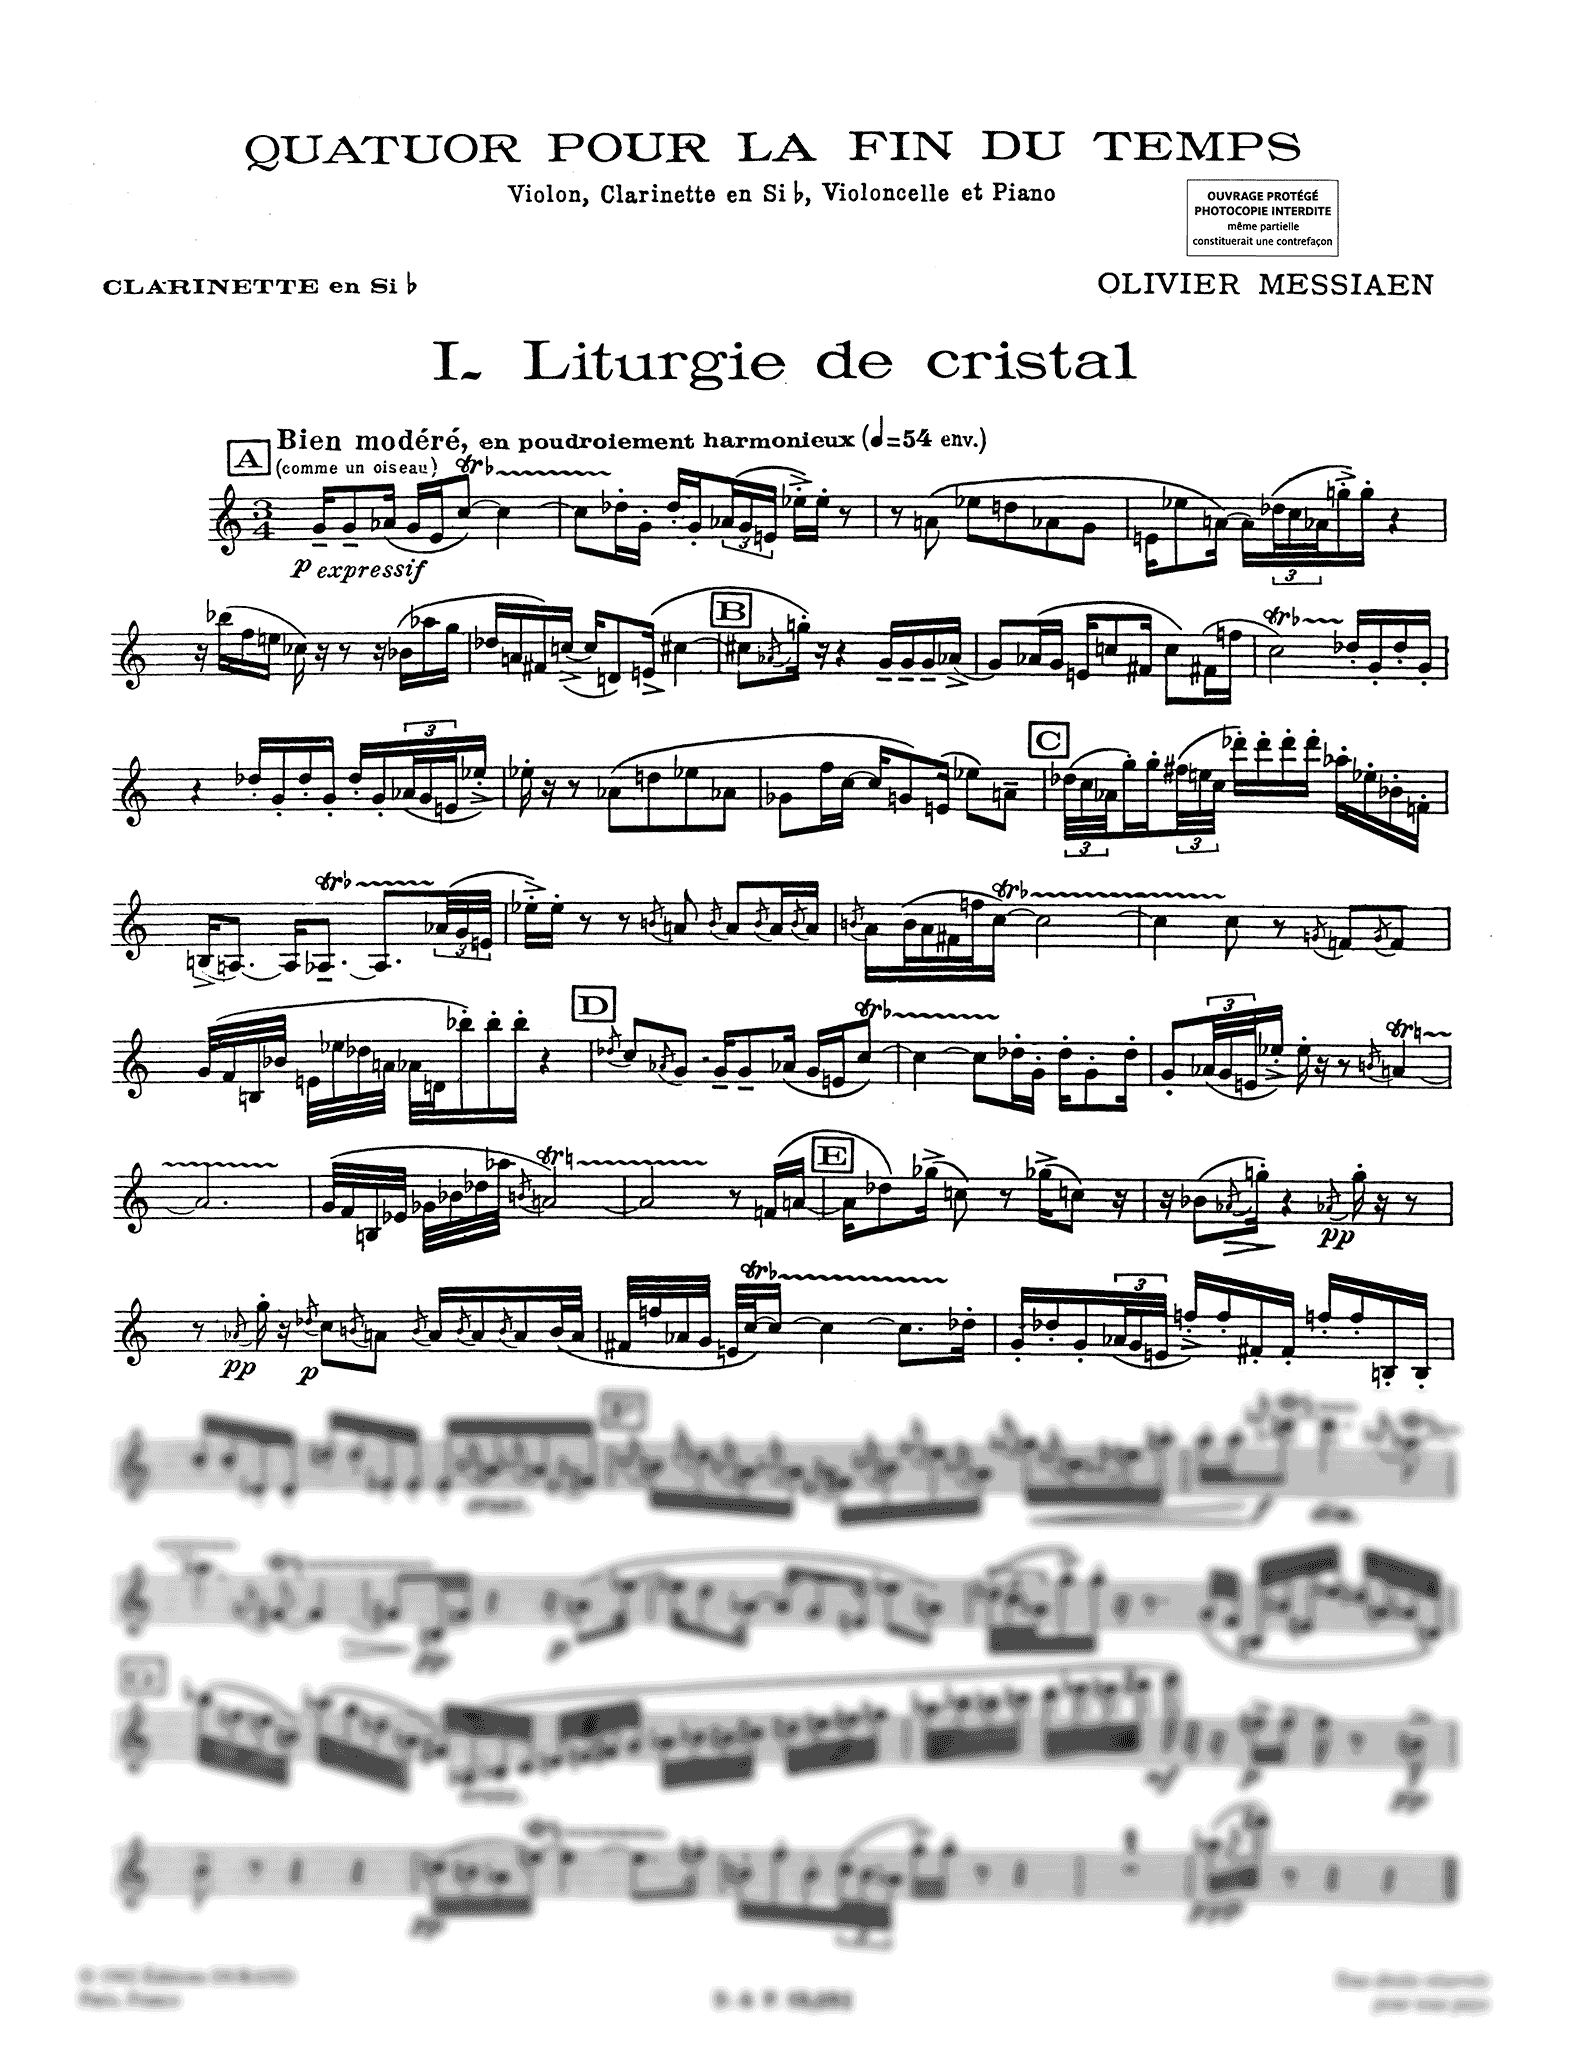 Messiaen Quatuor pour la fin du temps clarinet part